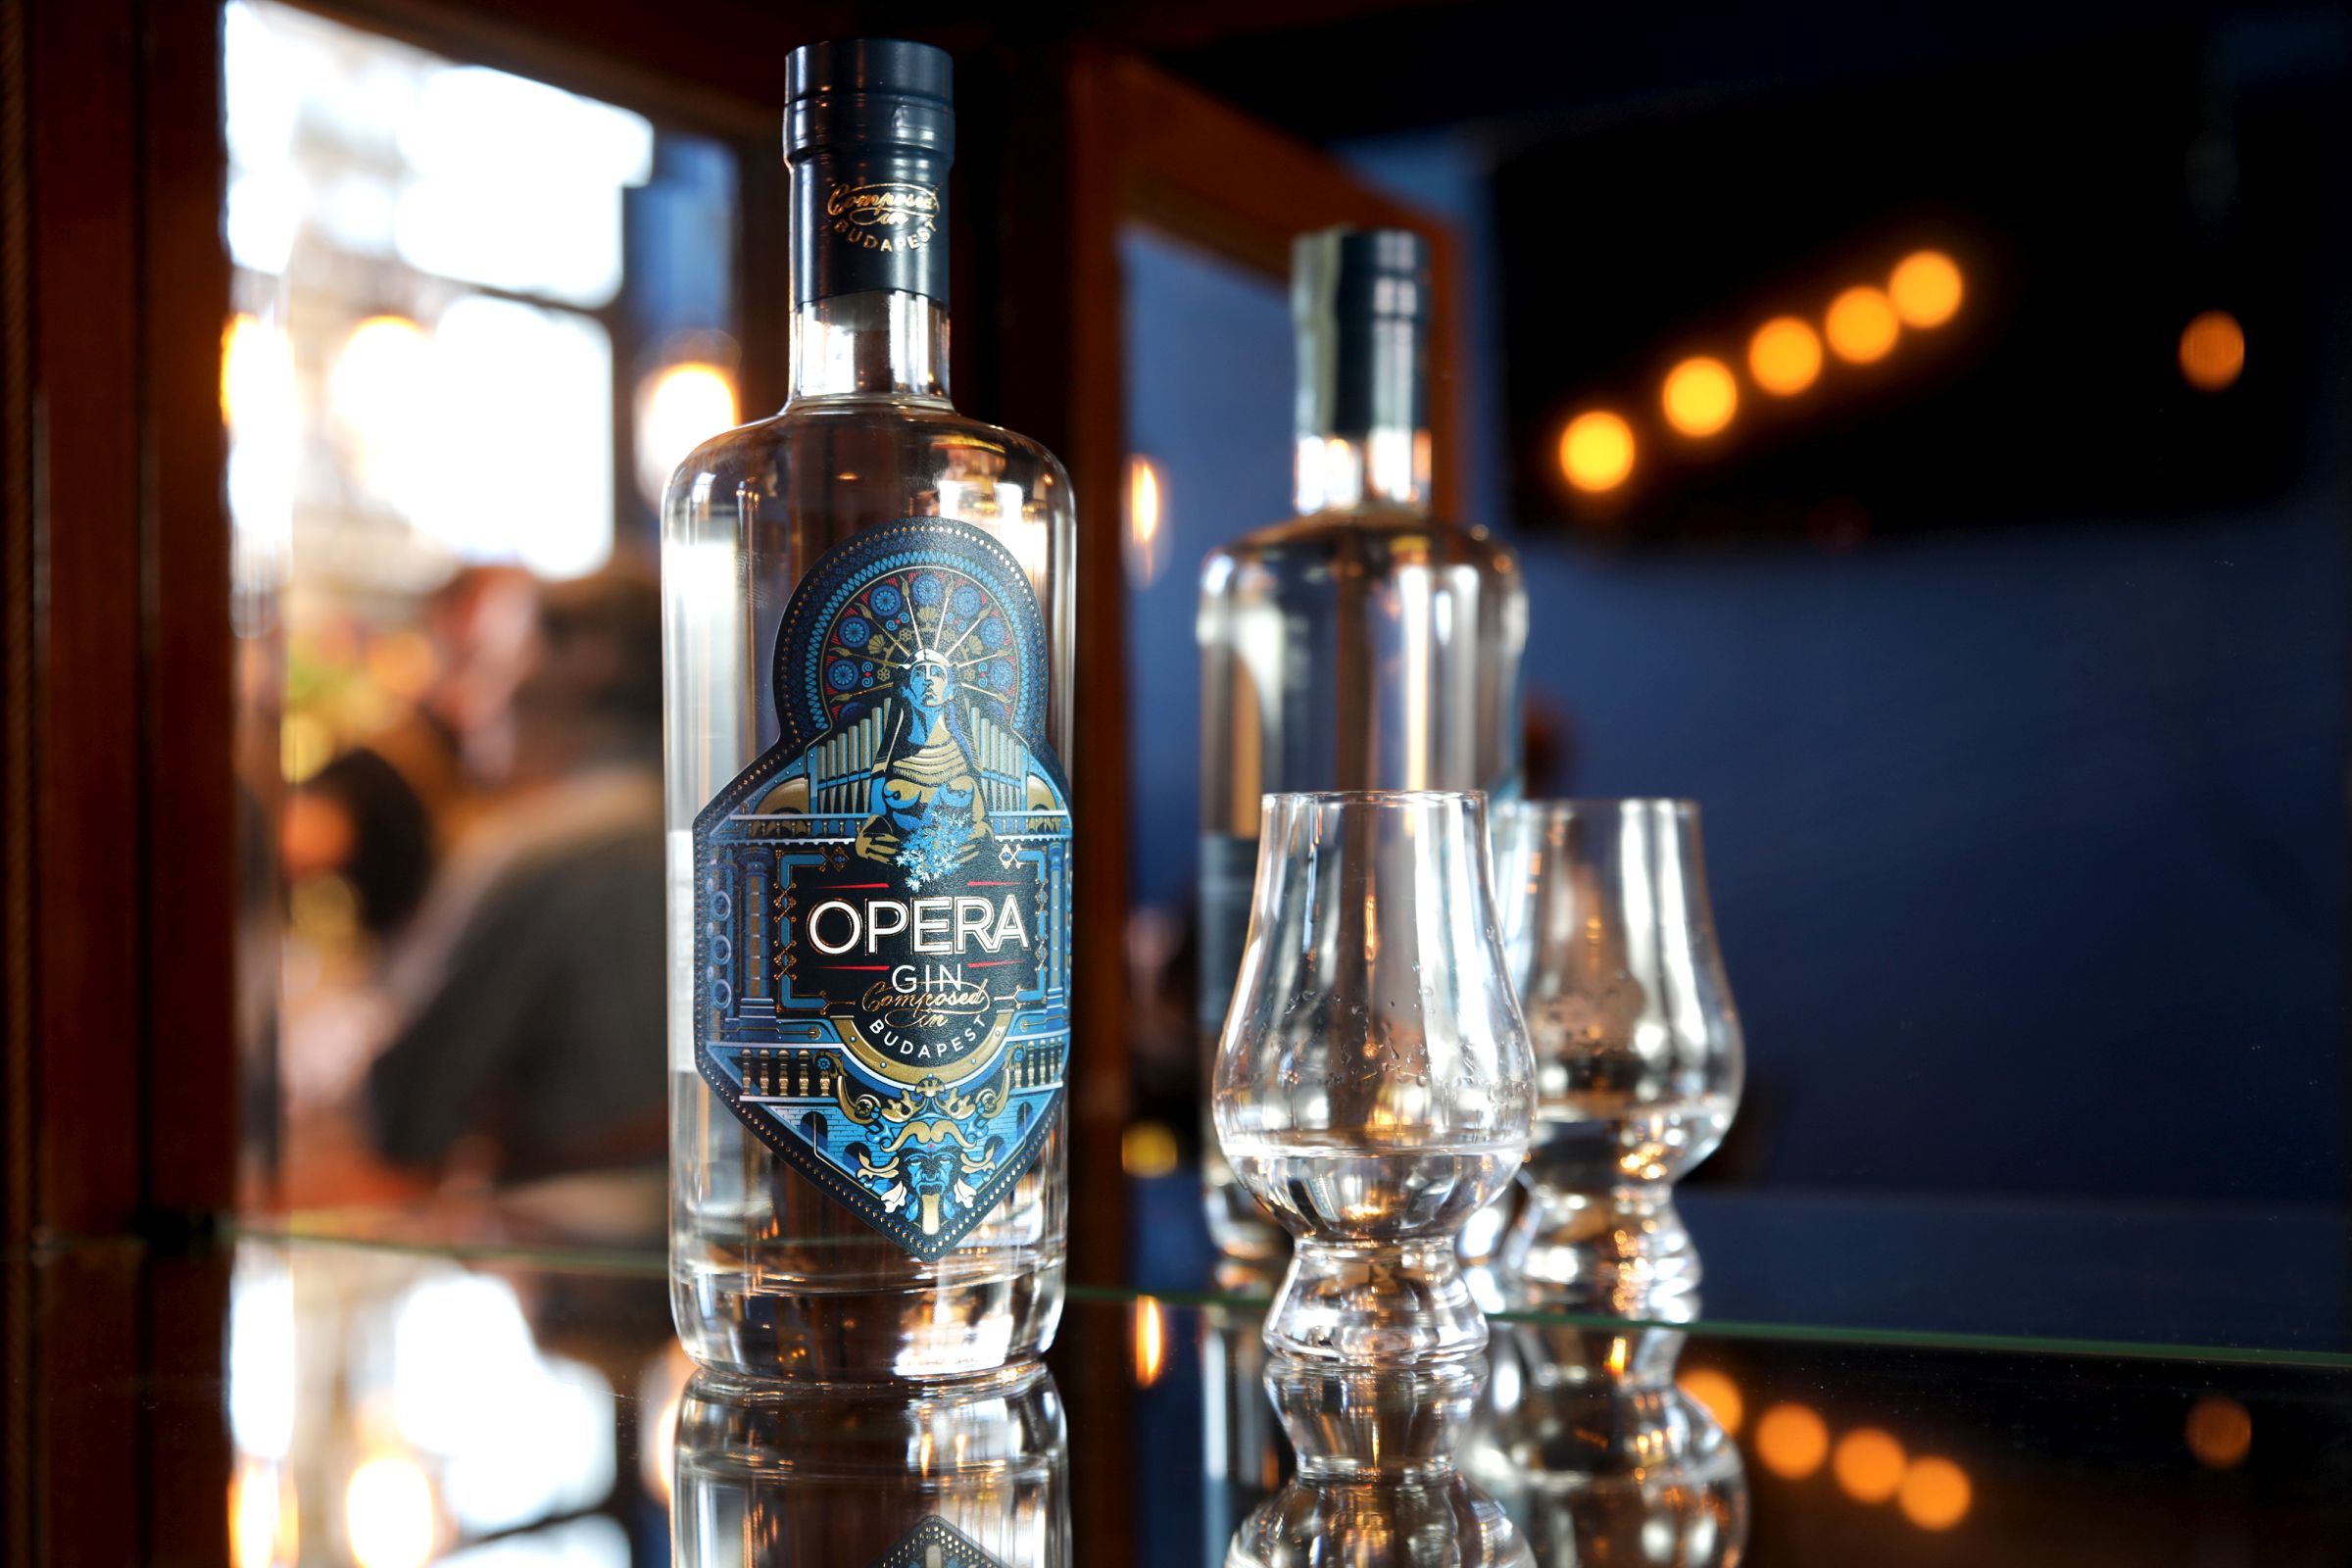 Saját gint kapott a város – bemutatkozik az Opera Gin